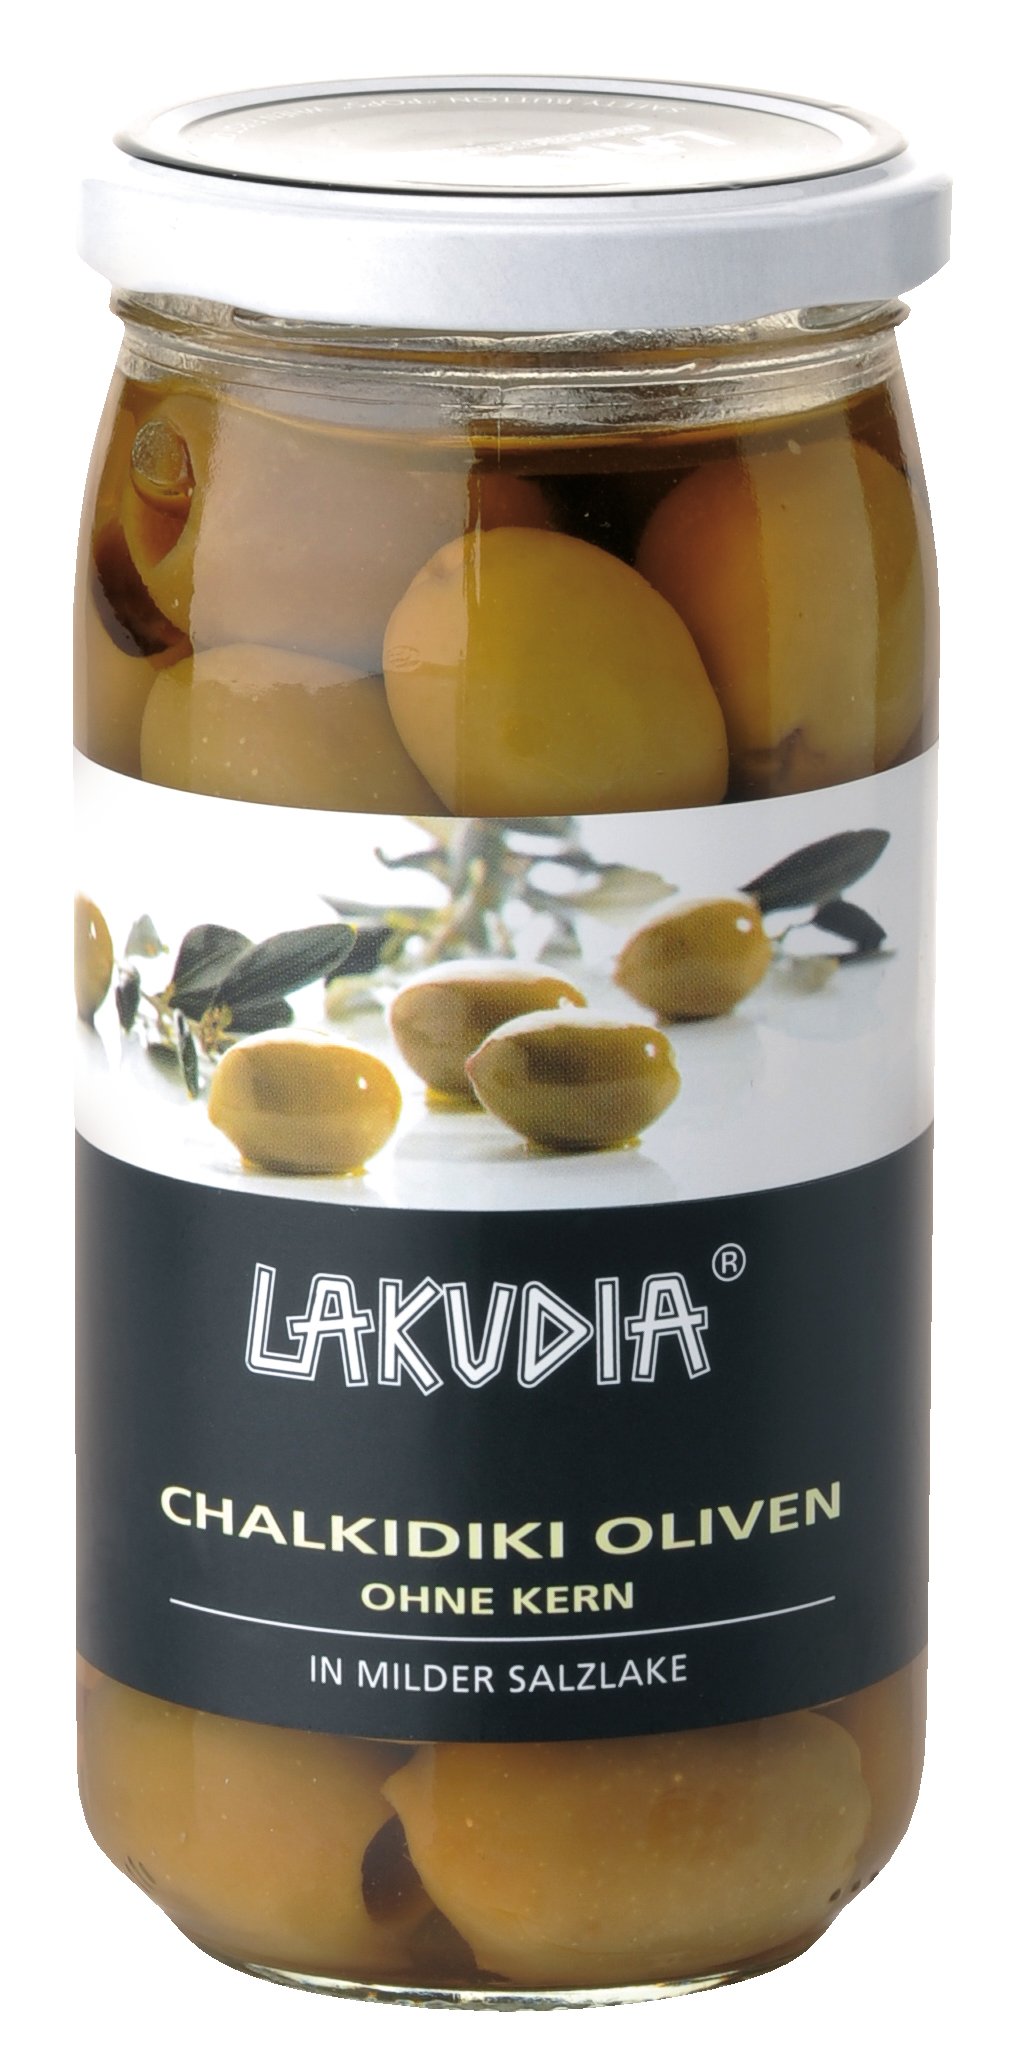 Grüne Chalkidiki Oliven, ohne Kern